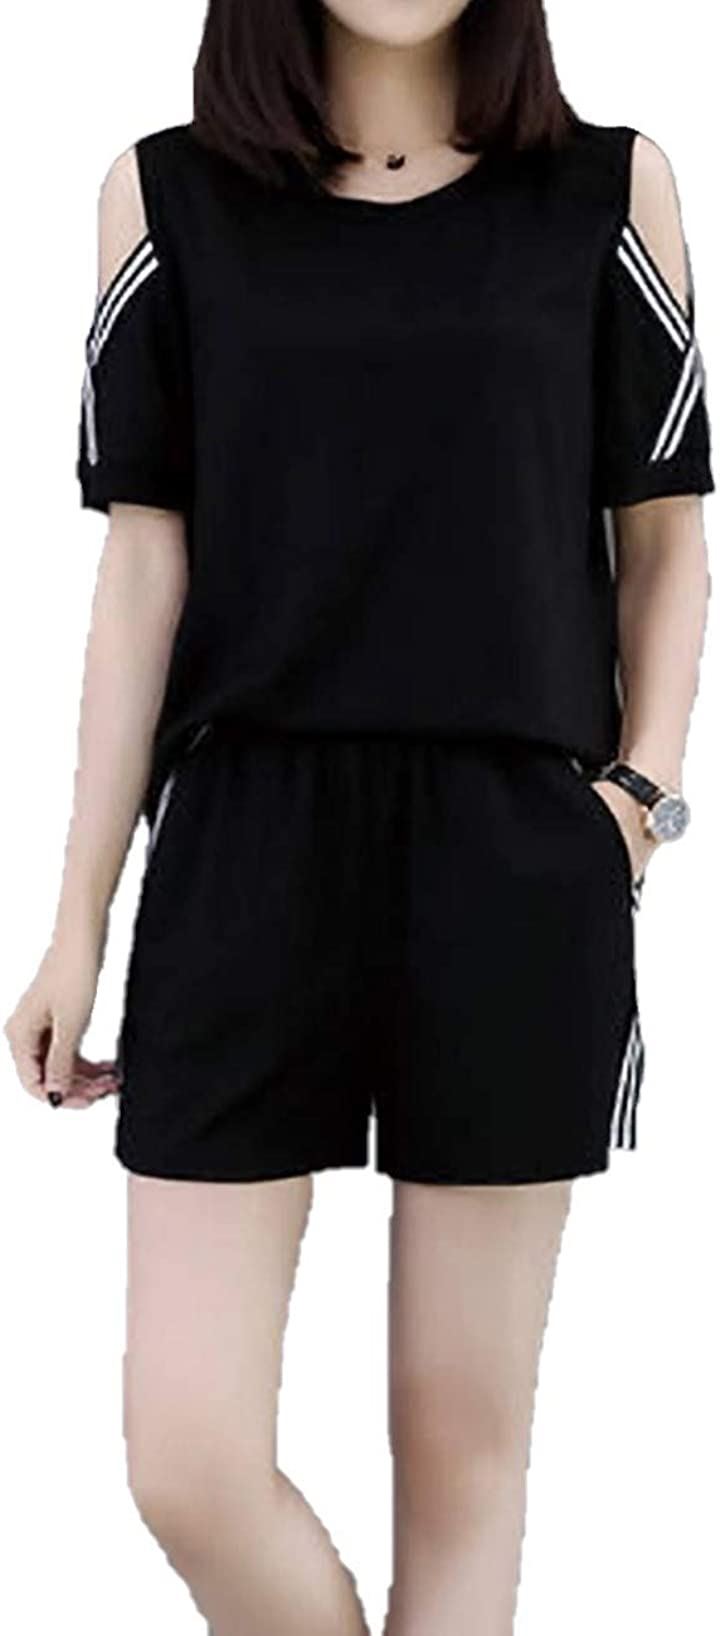 カナエルンレディース オフショルダー 半袖 ショートパンツ ライン 通気性 薄手 夏 通学 ルームウェア ファッション 黒白 セレブ リラックス ブラック Tシャツ ハーフ ジム ヨガ トレーニング(ブラック肩だし, XL（通常のMサイズ）)